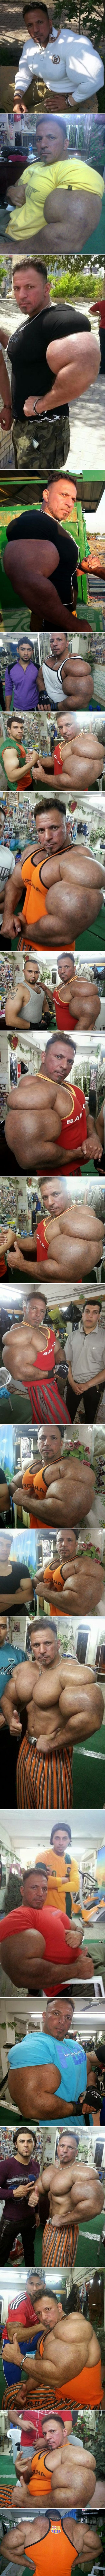 POPAJ JE ŽIV! Ovaj muškarac ima bicepse veće od vaše glave i izgleda prečudno